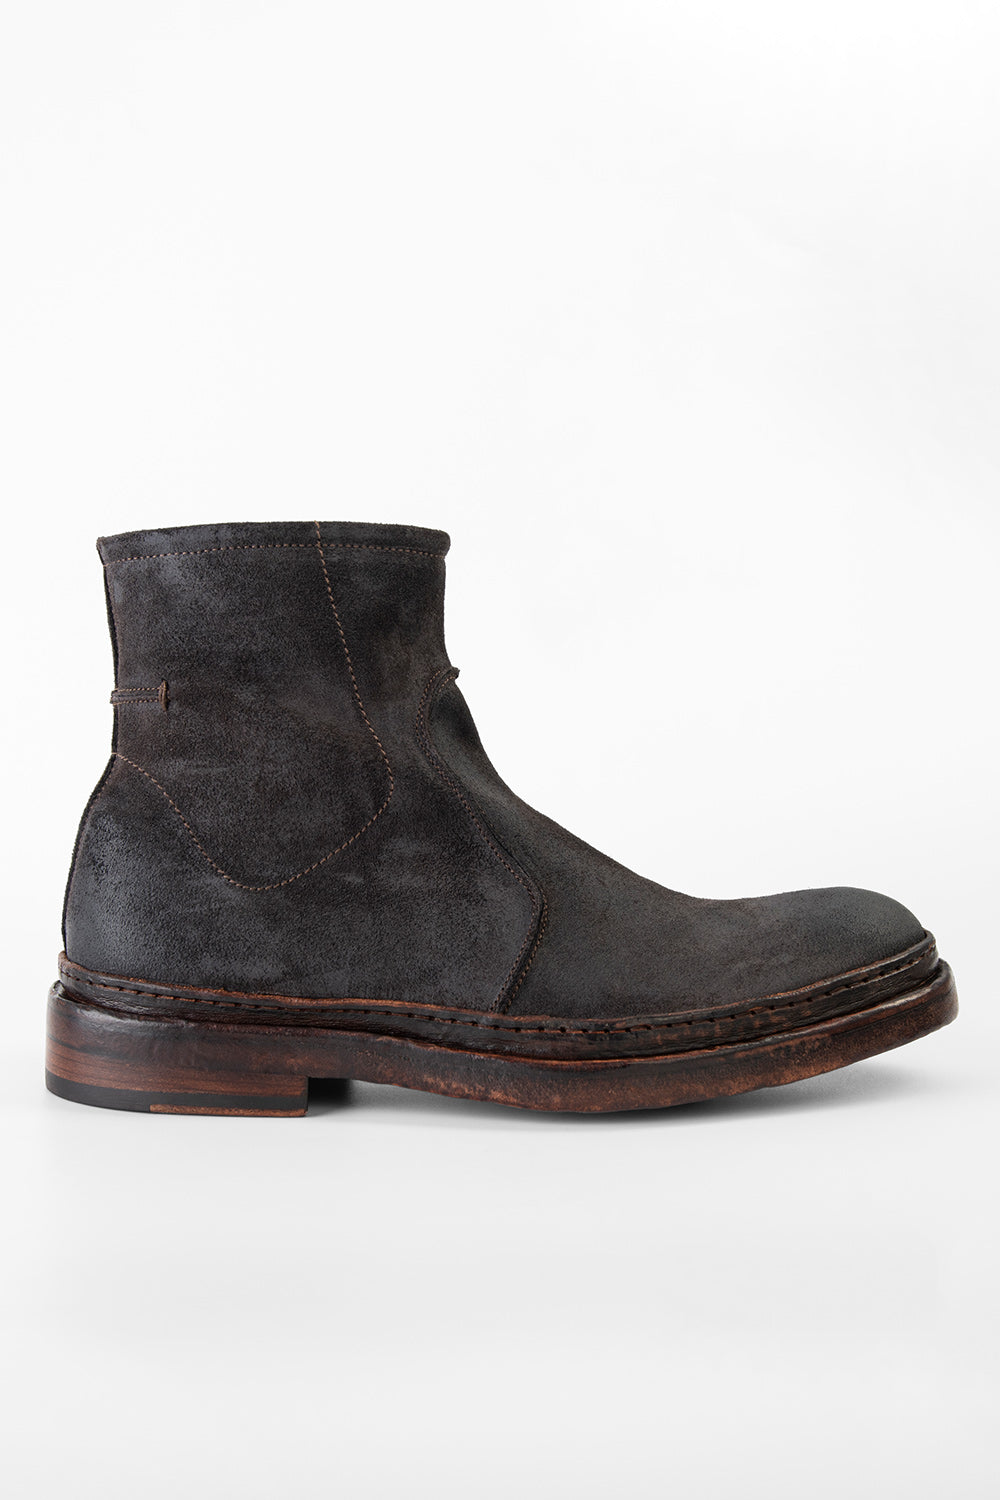 trojansk hest Lily frisk YORK dark brown welted chelsea boots | untamed street – UNTAMED STREET